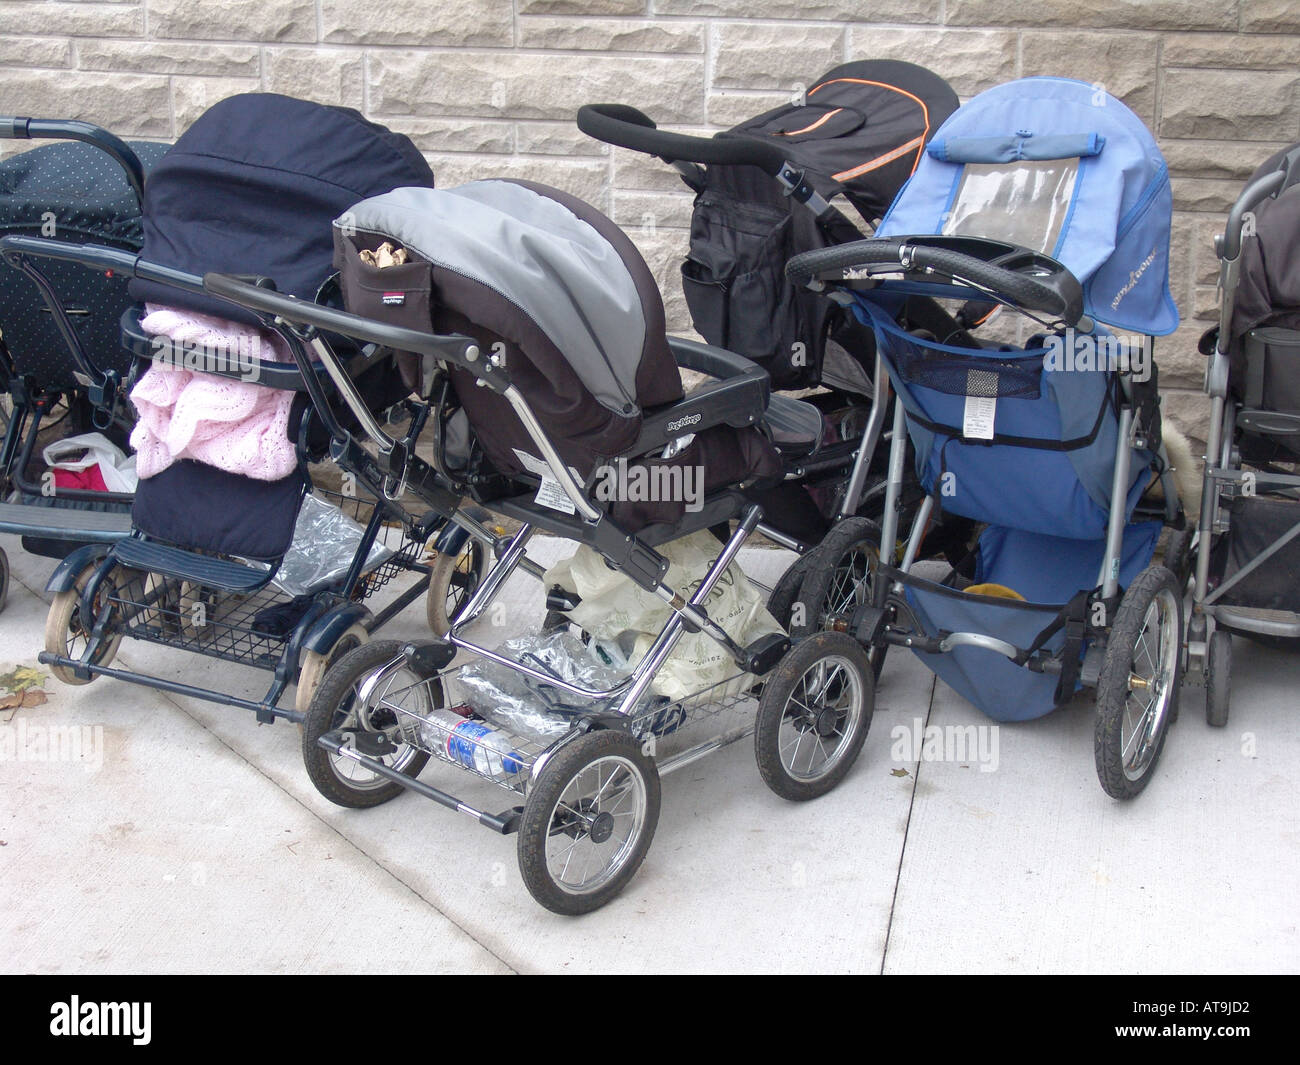 Stau von Baby Kinderwagen vor einem Gemeindezentrum Bibliothek von Kindermädchen geparkt Stockfoto